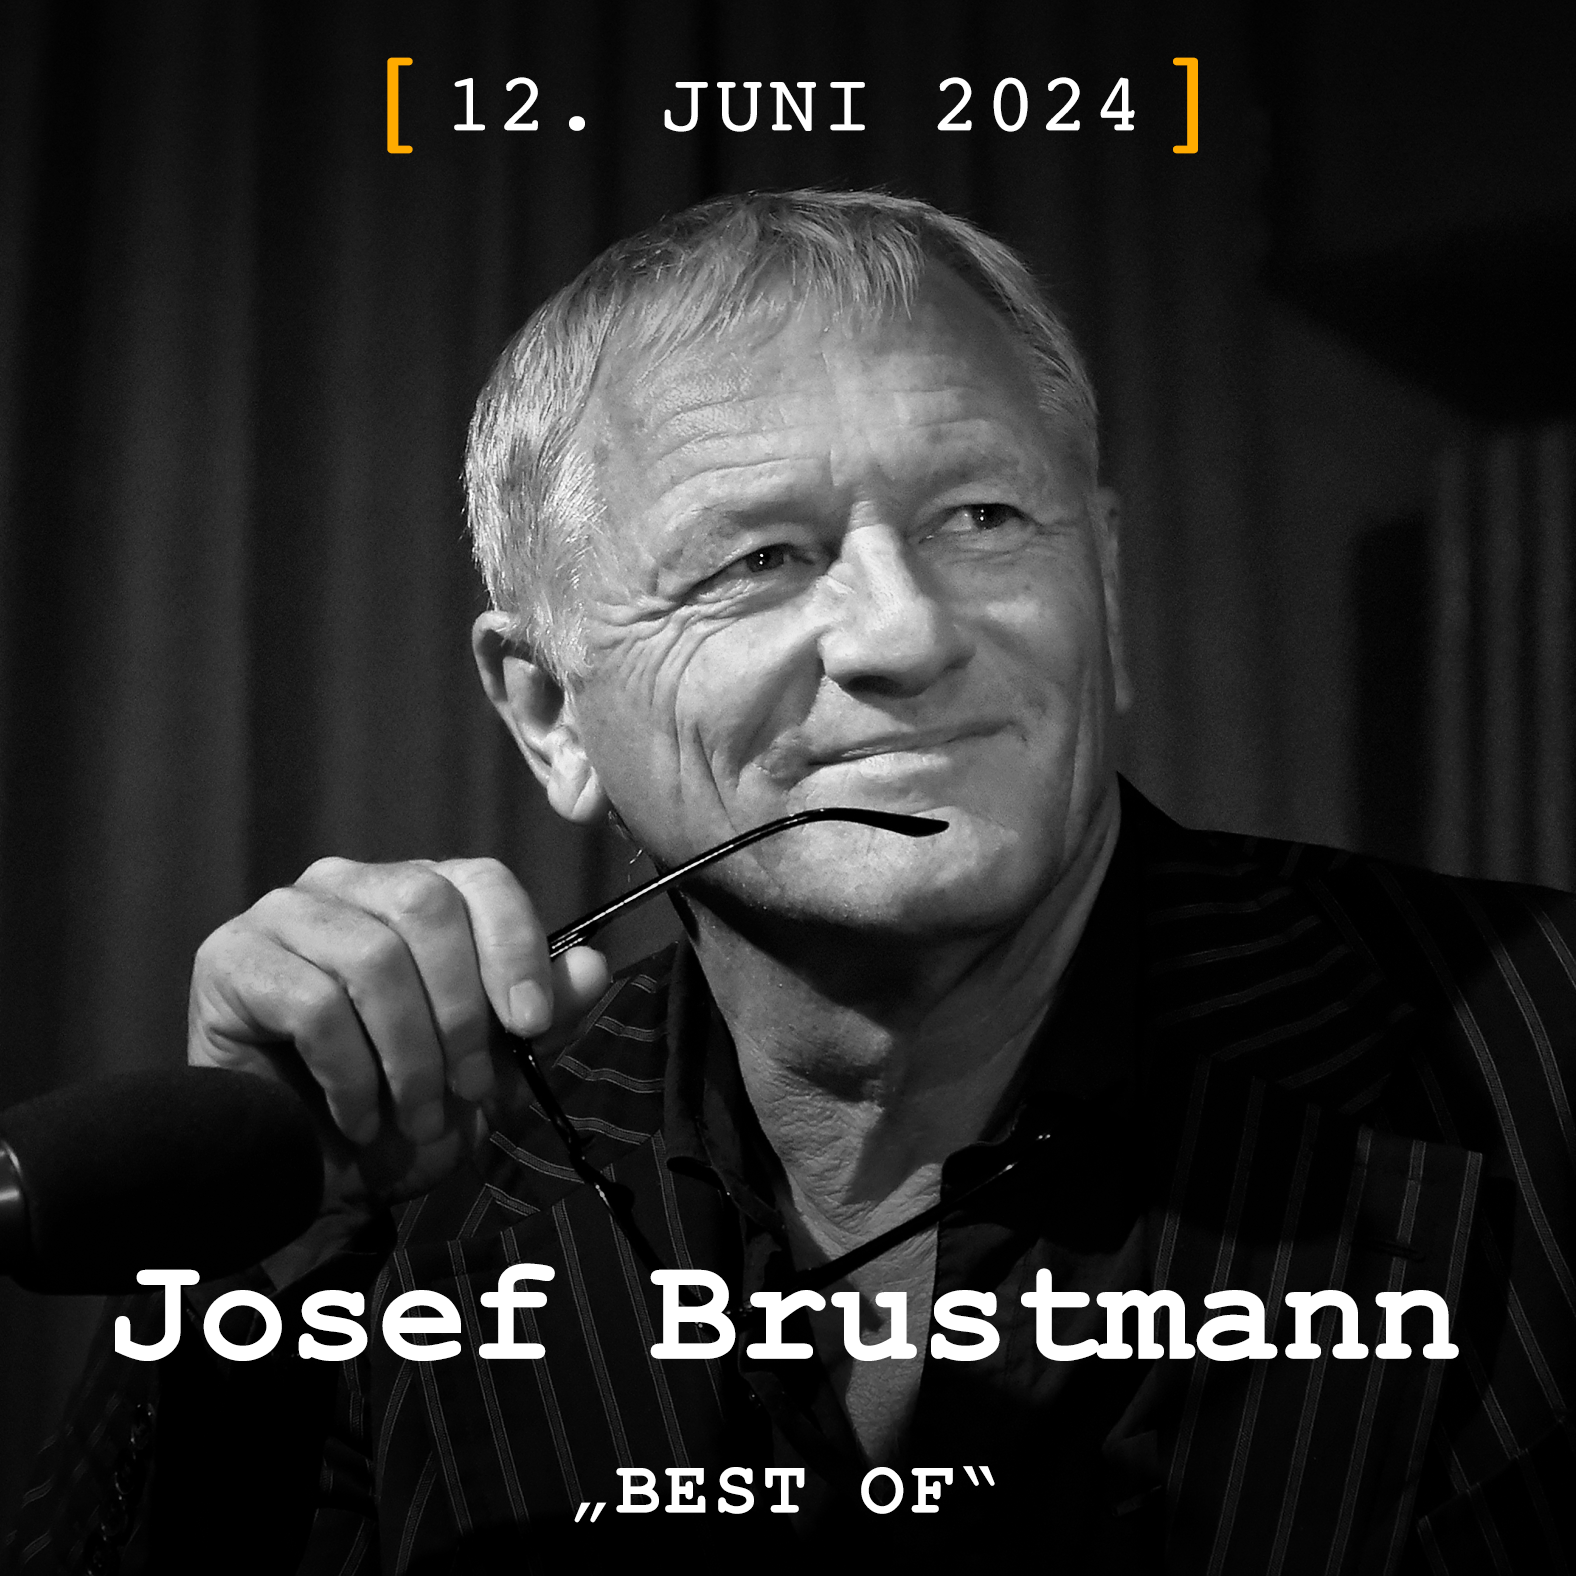 Josef Brustmann